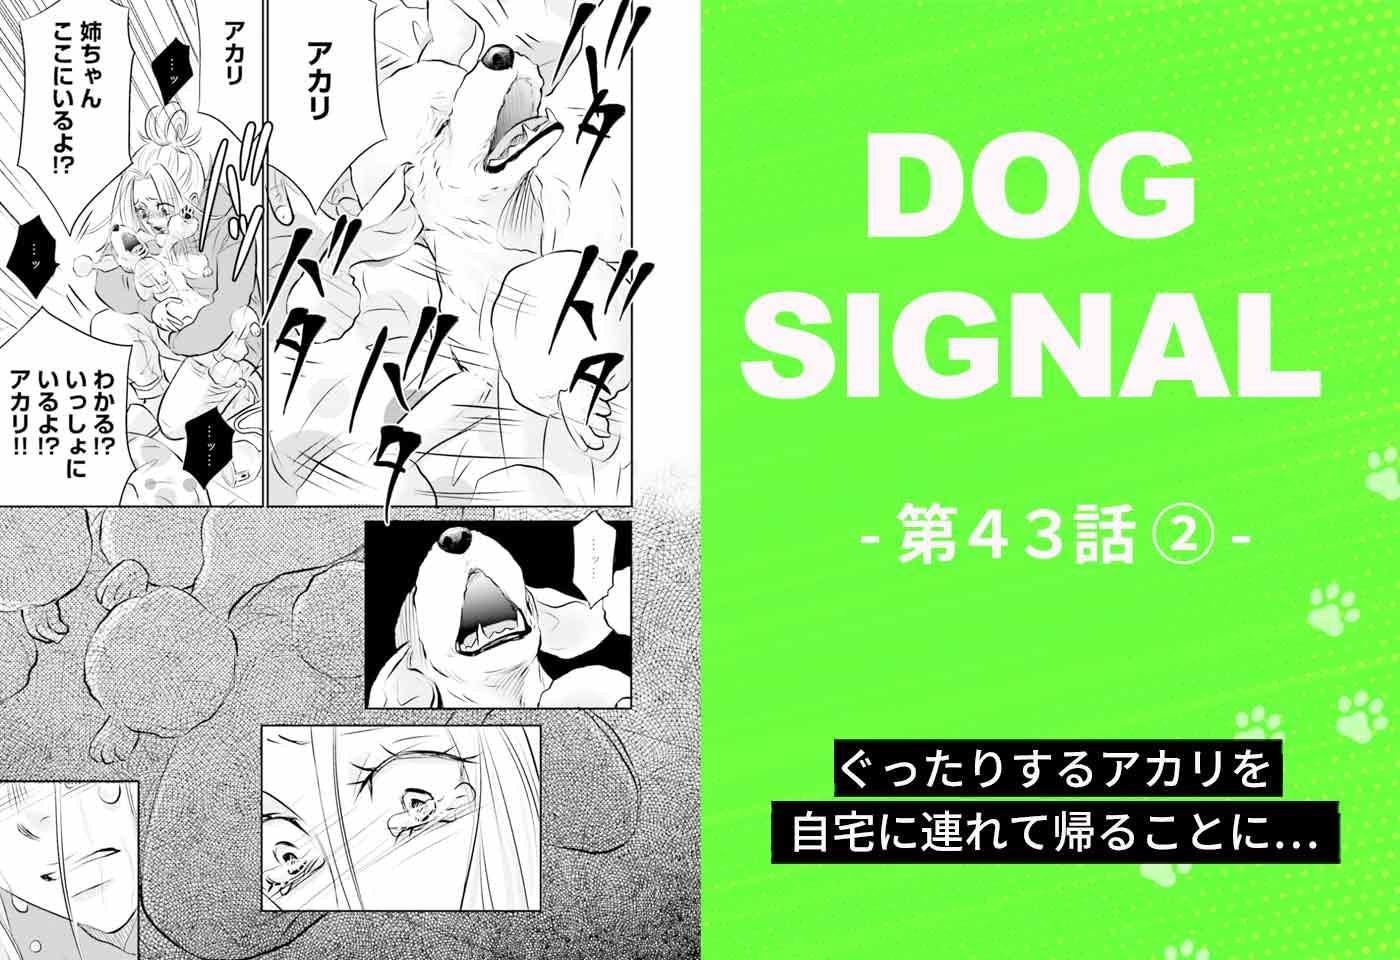 漫画『DOG SIGNAL（ドッグシグナル）』43話目2/4　愛犬を家に連れて帰ることを決めた